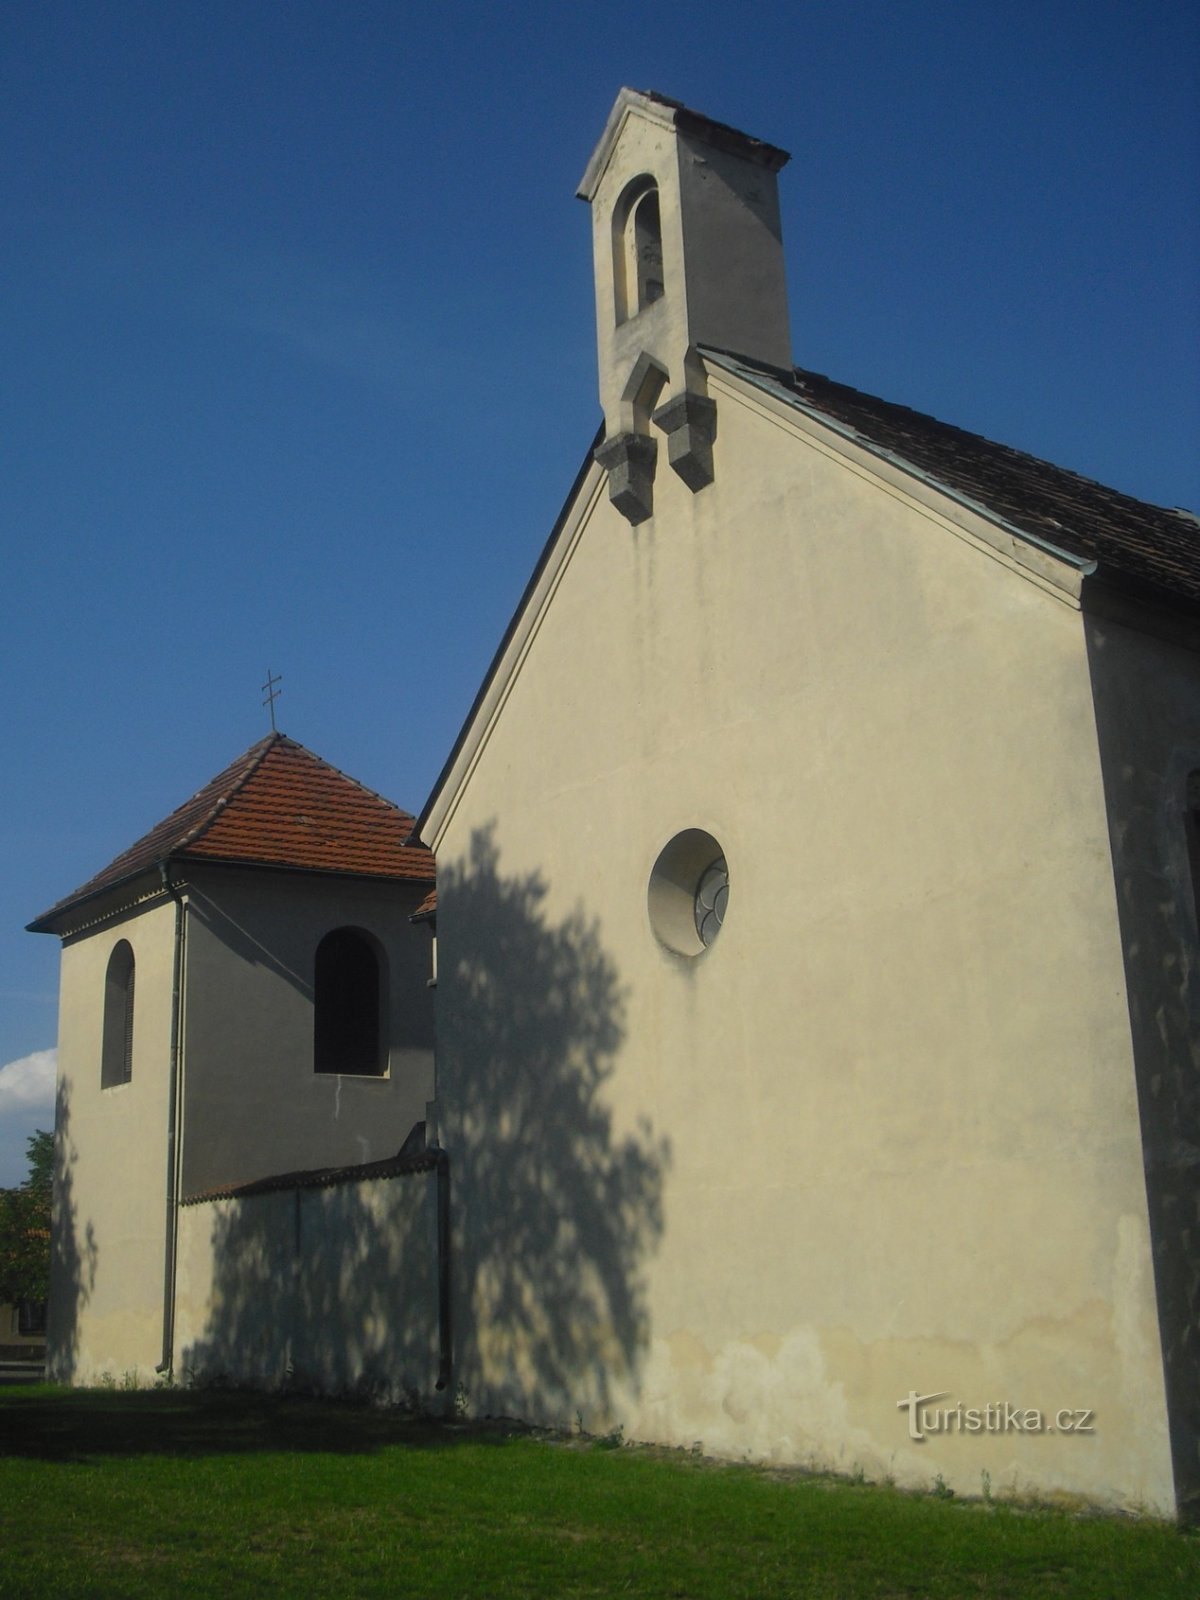 Εκκλησία του Αγ. Η Kateřiny στο Tetín